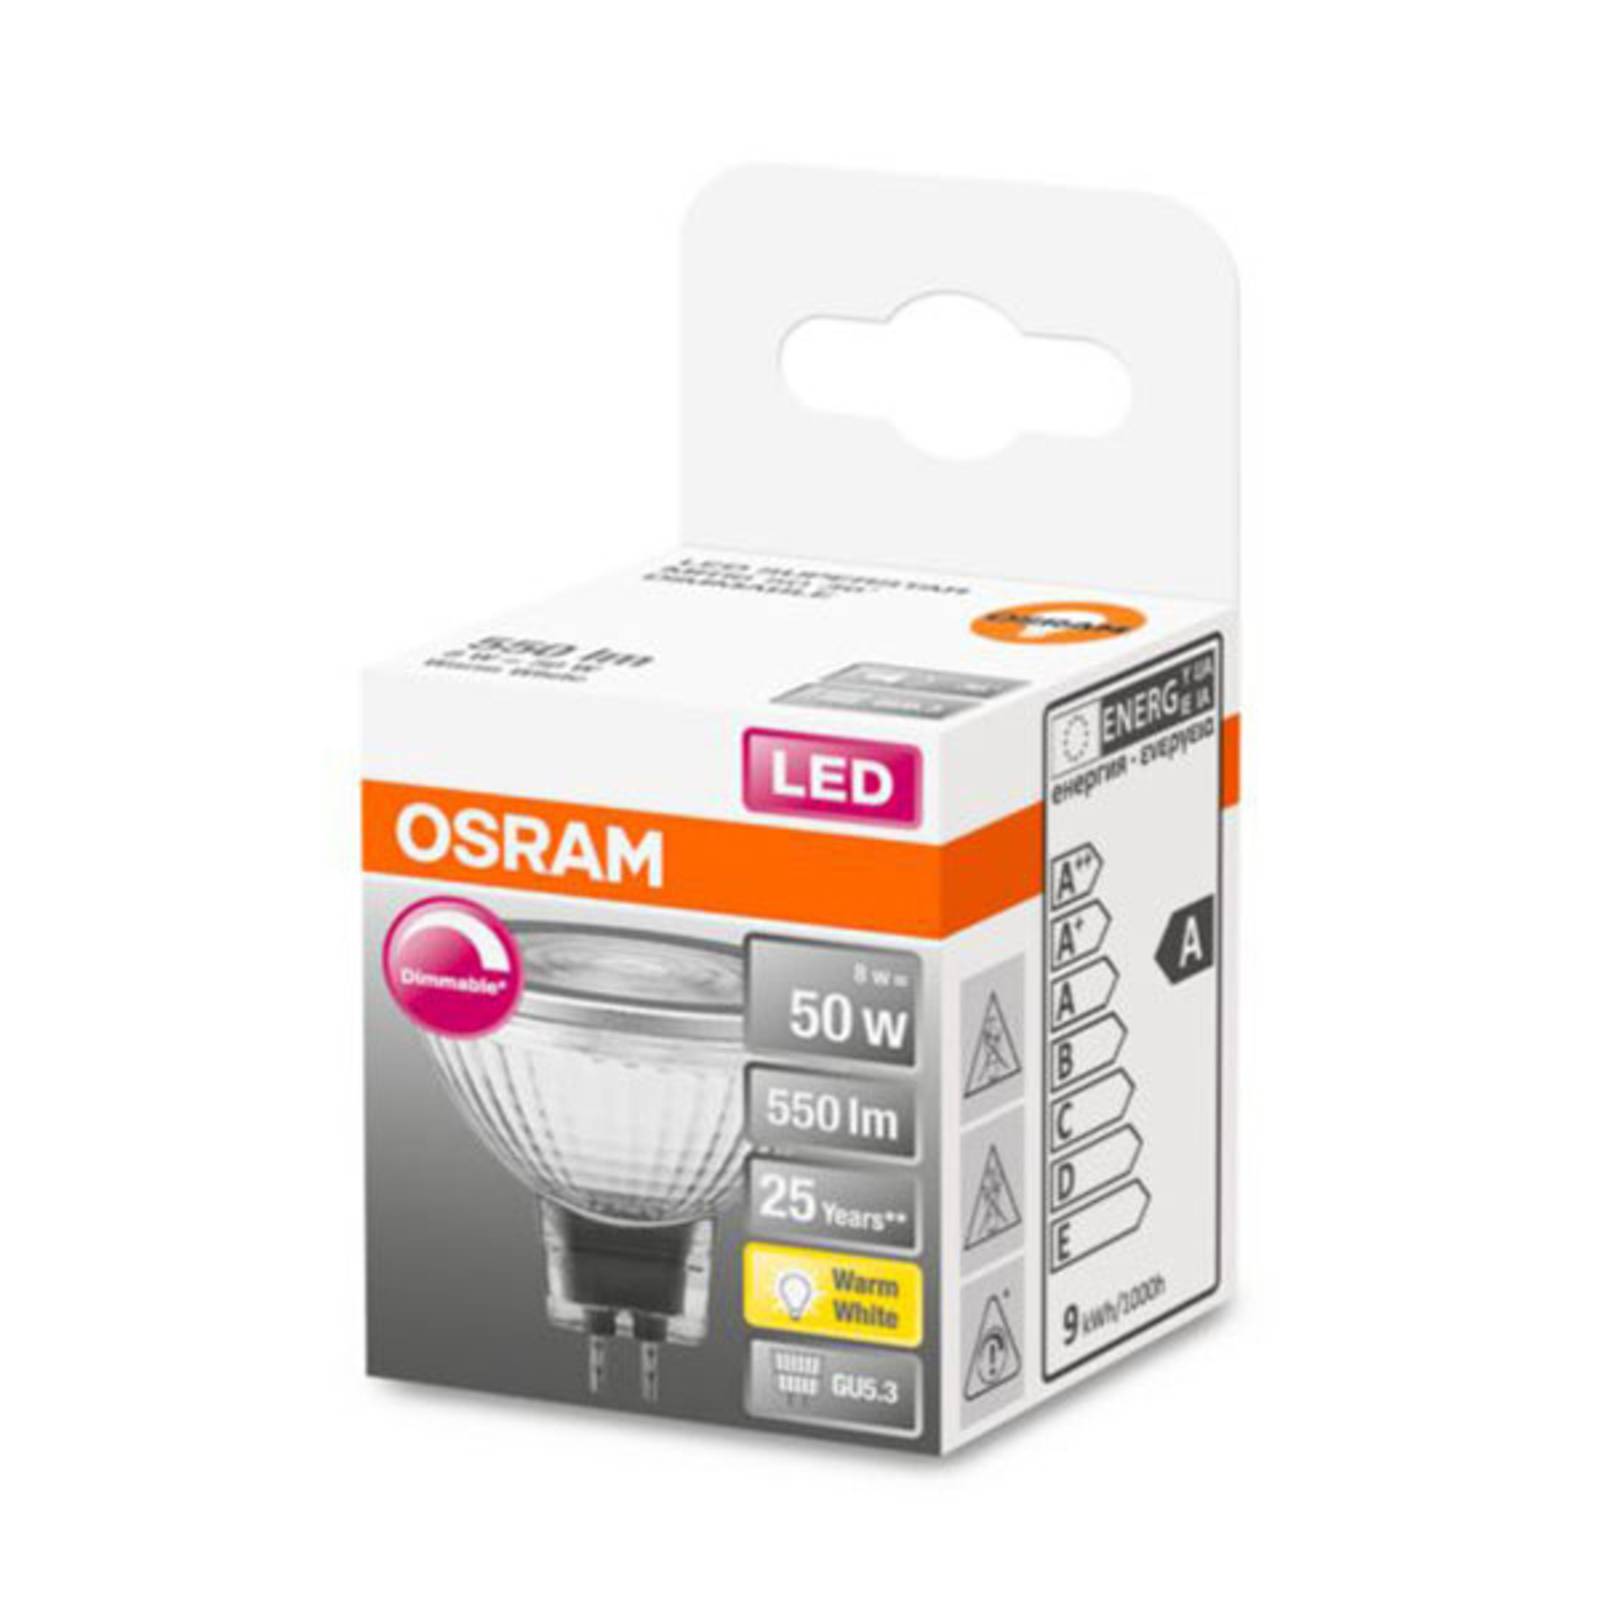 OSRAM OSRAM LED reflektor GU5,3 8W 927 36° stmívací